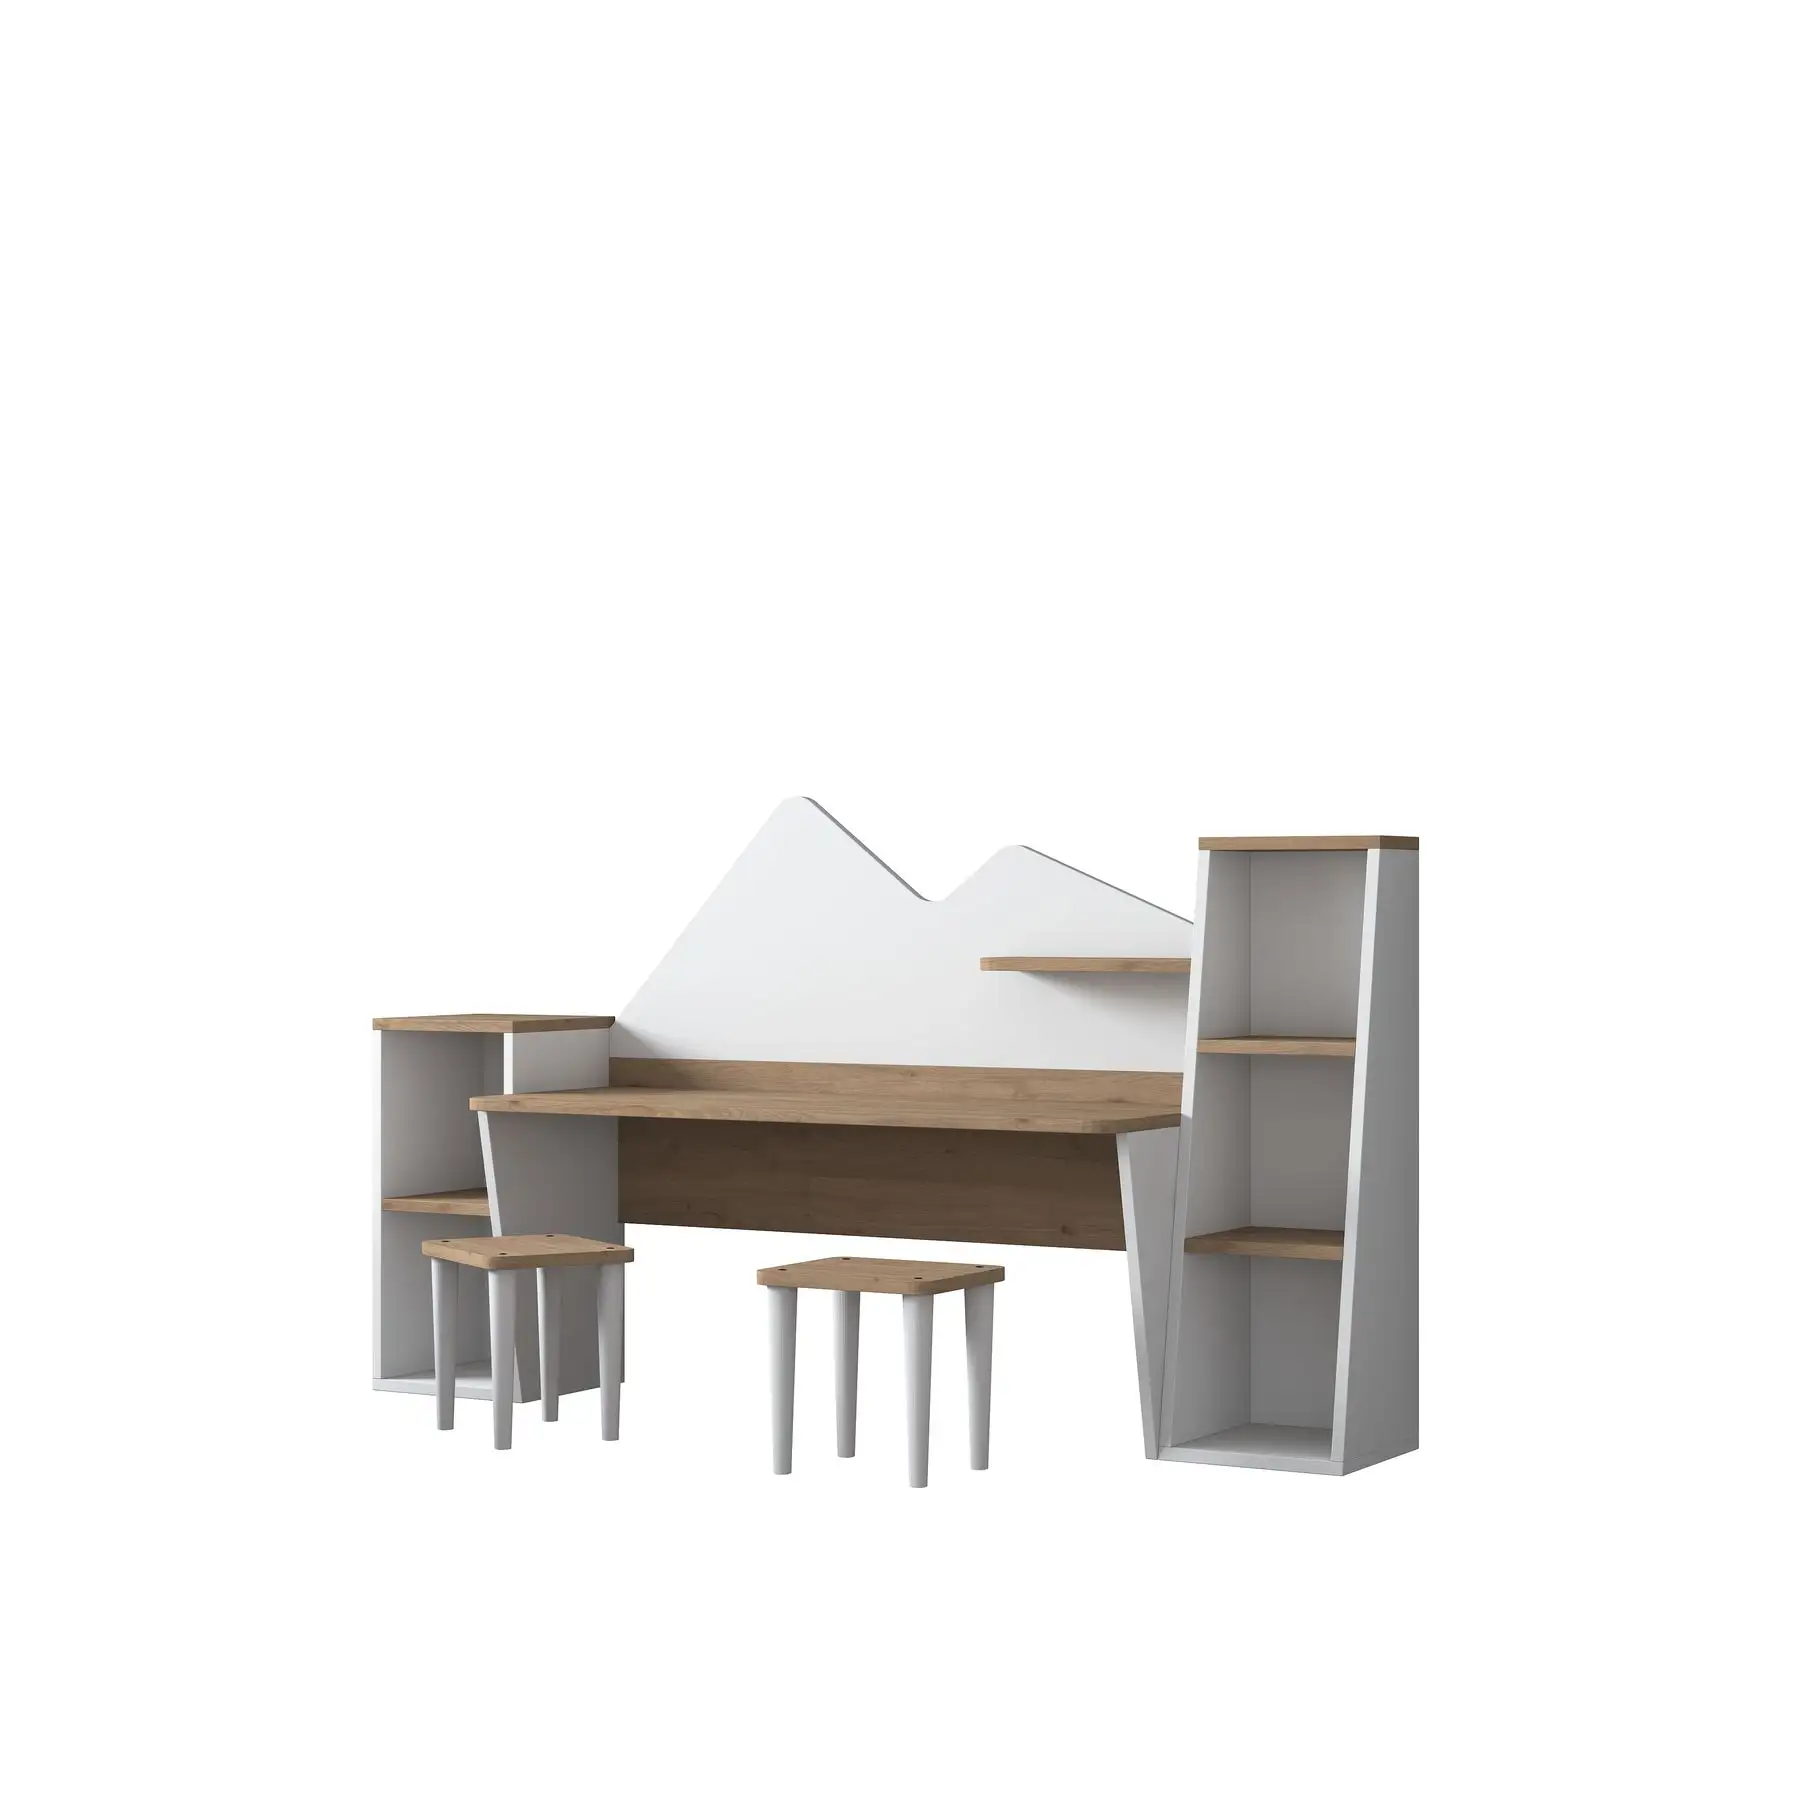 ラニDL101デスクと2つのスツールセット子供用子供用テーブル勉強と遊び用S-ウォールナットホワイトカラー卸売家具2003